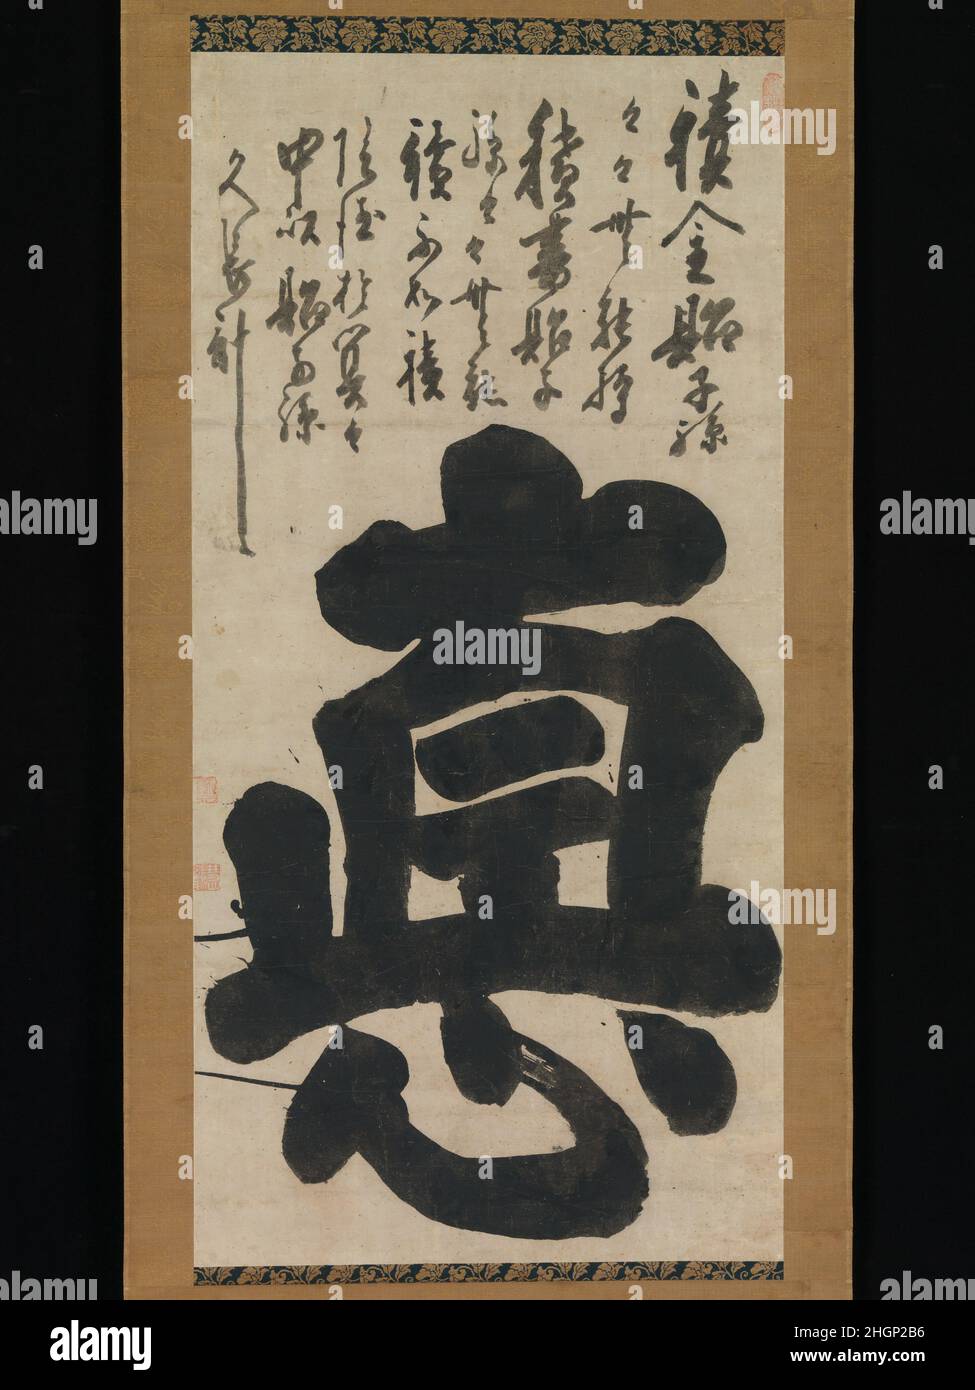 Vertu milieu du 18th siècle Hakuin Ekaku Japonais cette interprétation surdimensionnée du caractère pour la « vertu » (toku 徳) reflète l'énergie spirituelle exubérante projetée par Ekaku, qui a été l'un des principaux partisans de la renaissance de la secte Rinzai du bouddhisme zen à la fin de la période Edo au Japon.Composée à l’origine par l’historien chinois et érudit confucianiste SIMA Guang (1018-1086), l’inscription se lit comme suit : si vous empilez de l’argent pour vos enfants et petits-enfants, ils ne pourront pas s’y tenir.Si vous empilez des livres pour vos enfants et vos petits-enfants, ils n’en liront aucun.Non, la meilleure chose à faire Banque D'Images